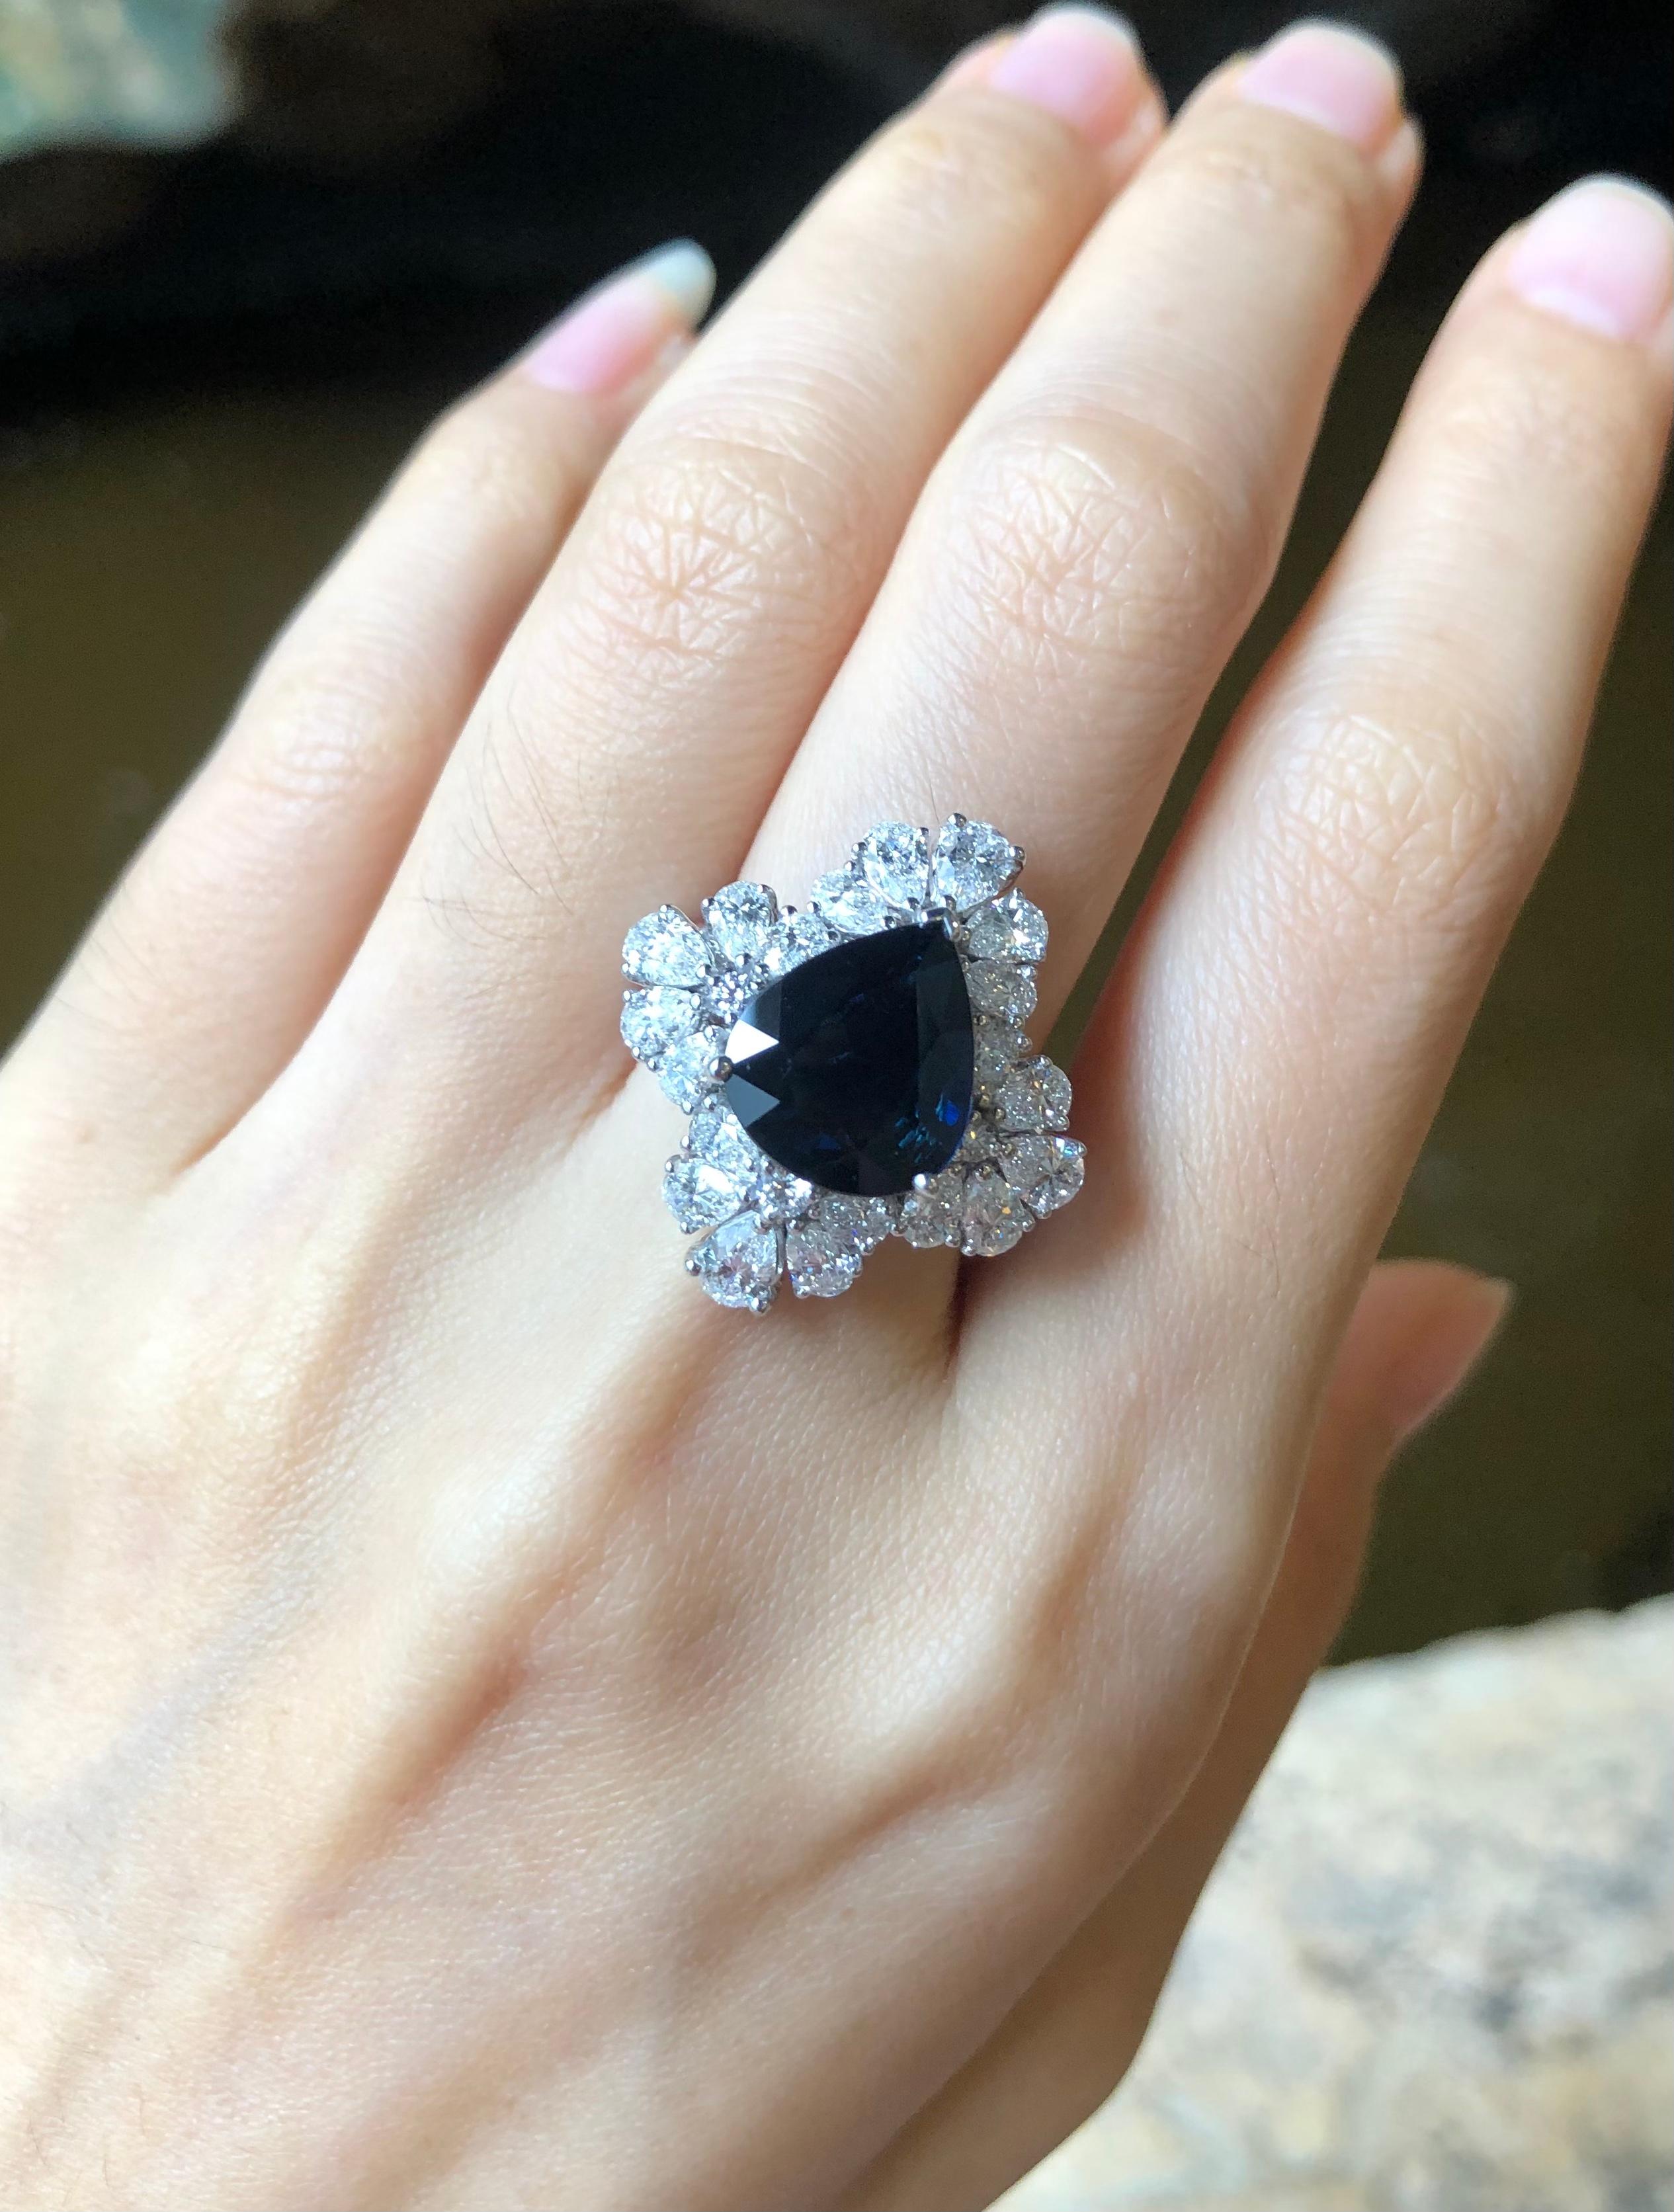 Saphir bleu 4,63 carats et diamant 1,46 carats Bague en or blanc 18 carats

Largeur :  1,0 cm 
Longueur :  1,2 cm
Taille de l'anneau : 53
Poids total : 9,1 grammes

